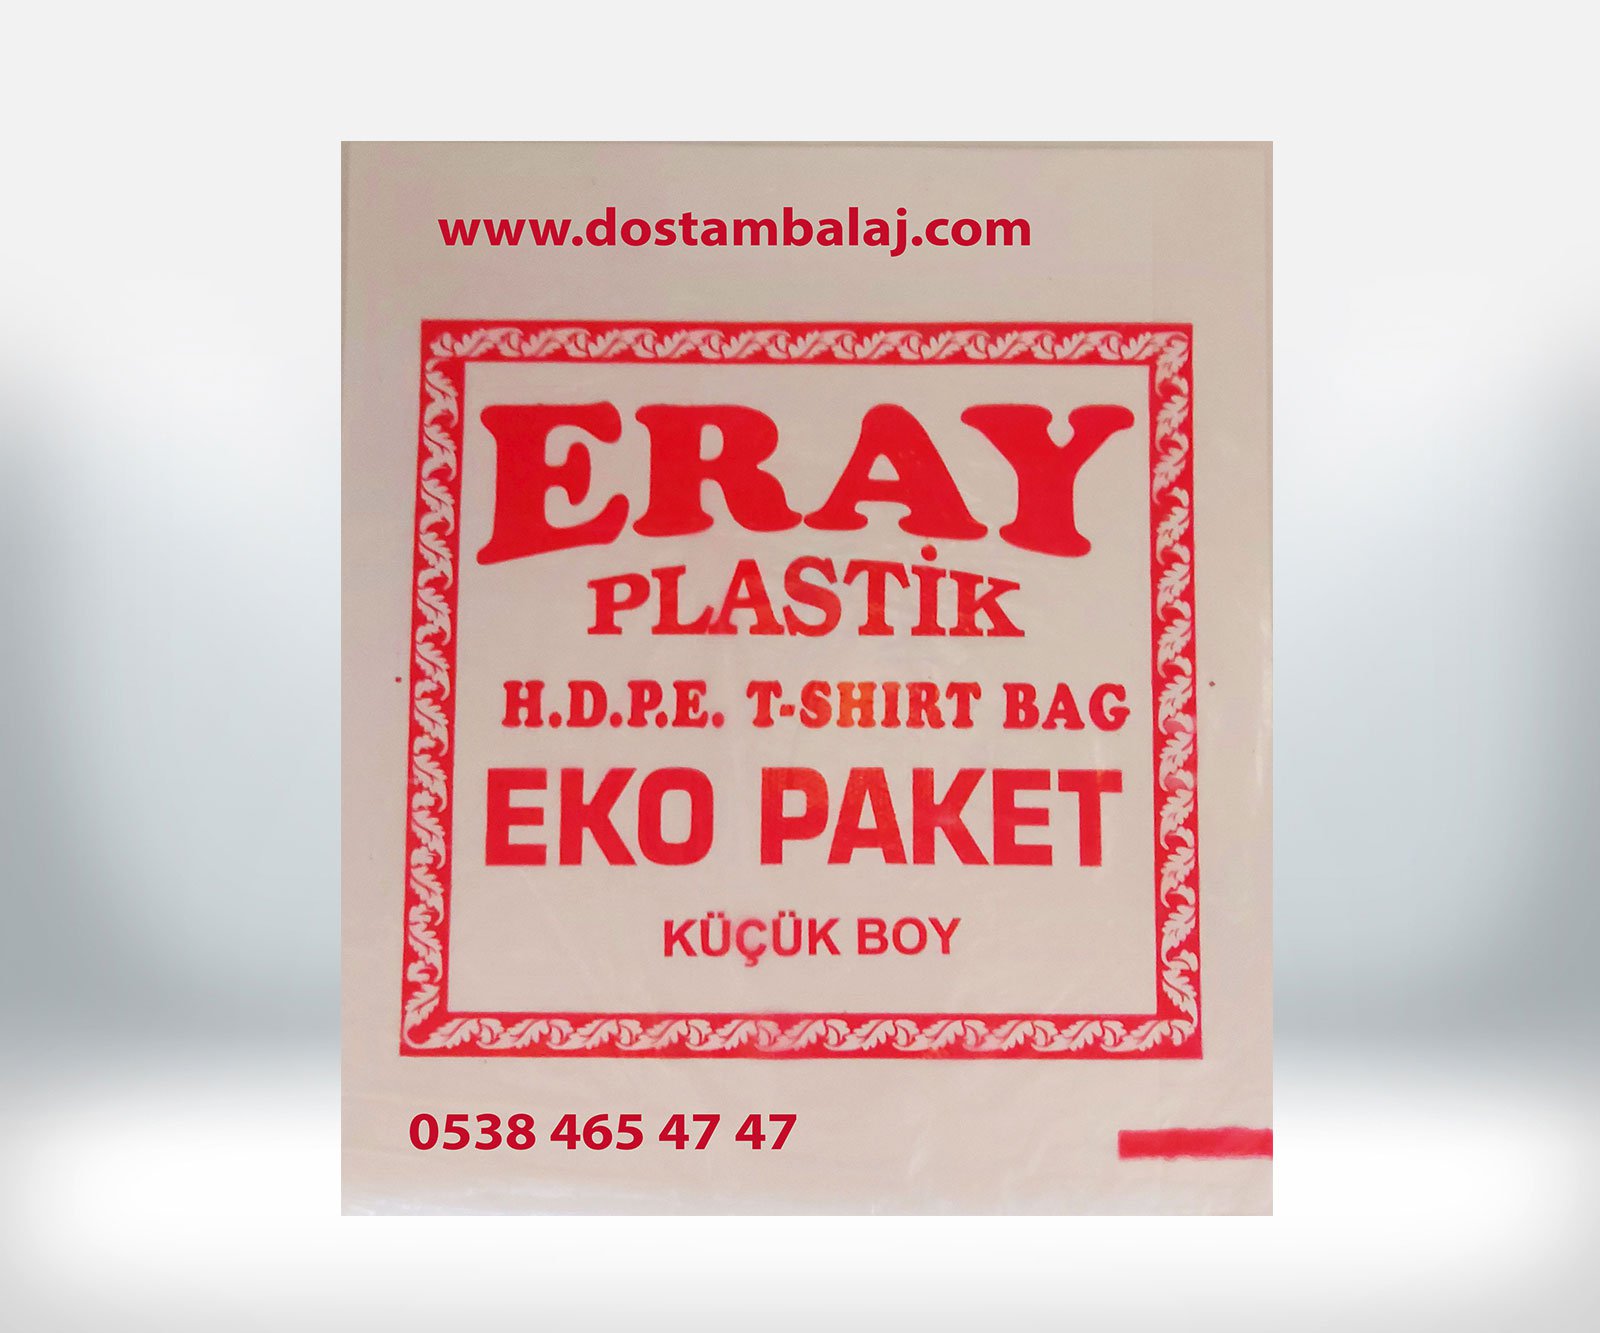 Eray Küçük Boy Eko Paket